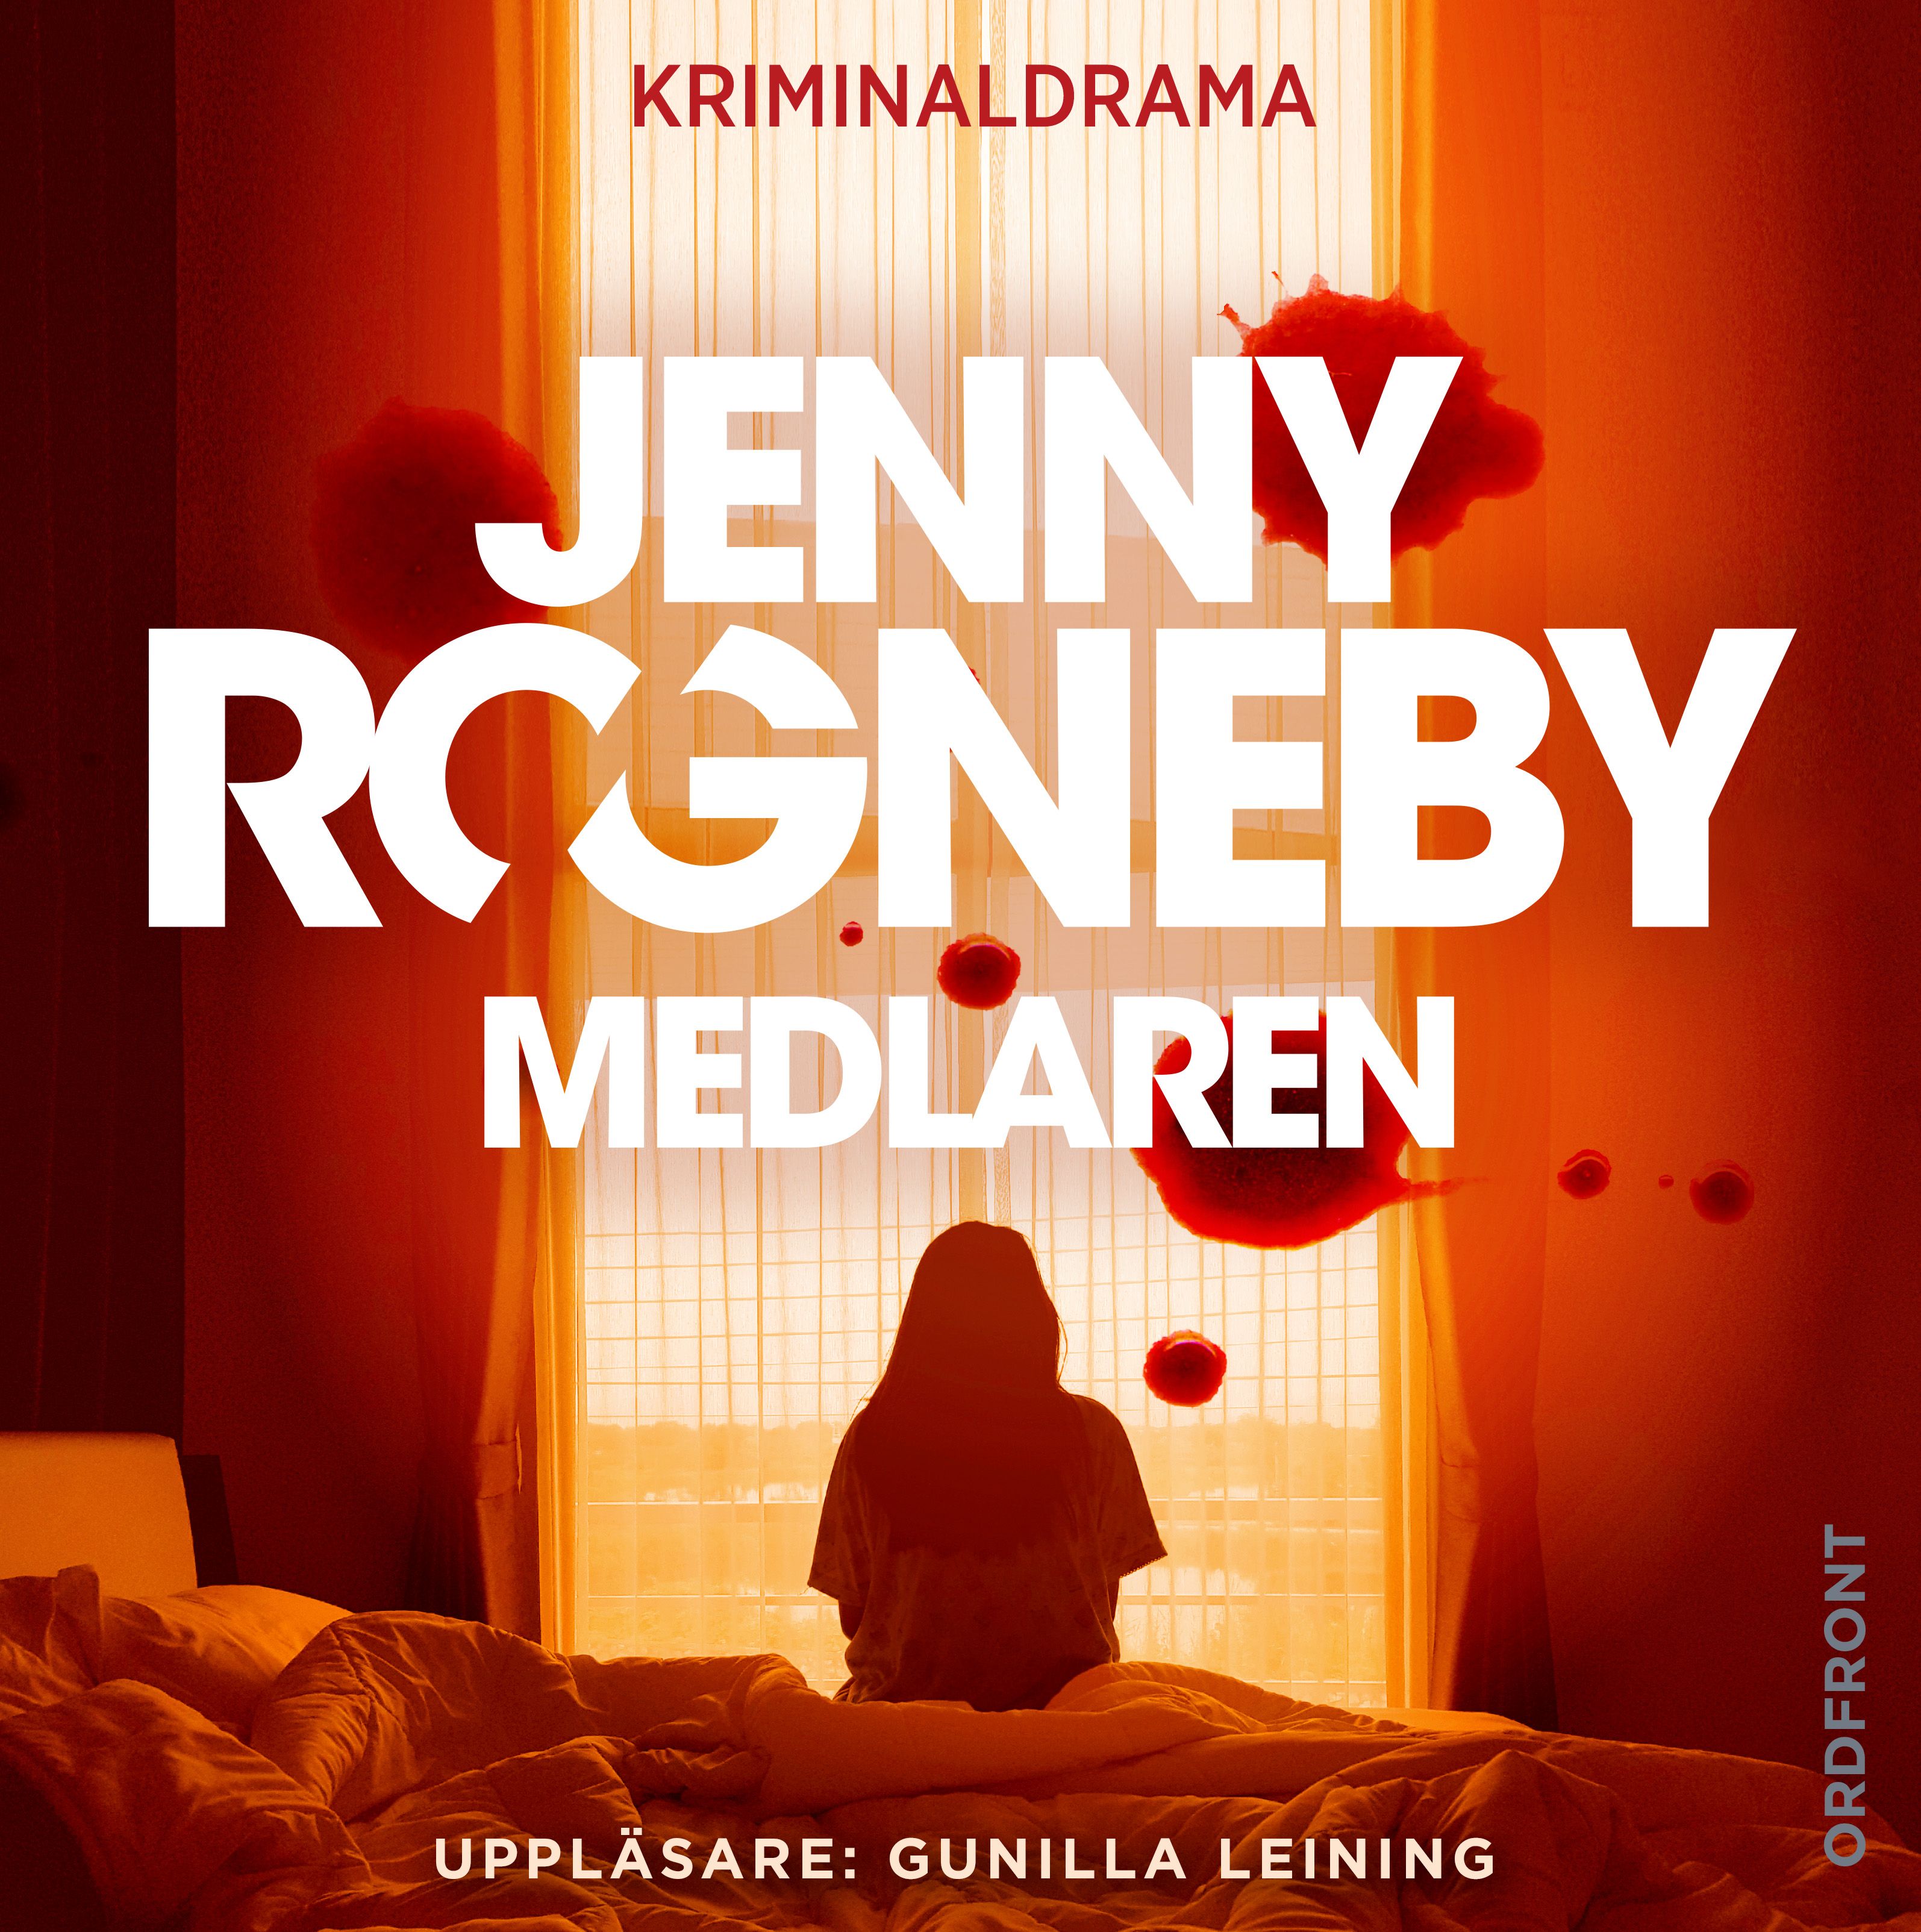 Medlaren, ljudbok av Jenny Rogneby